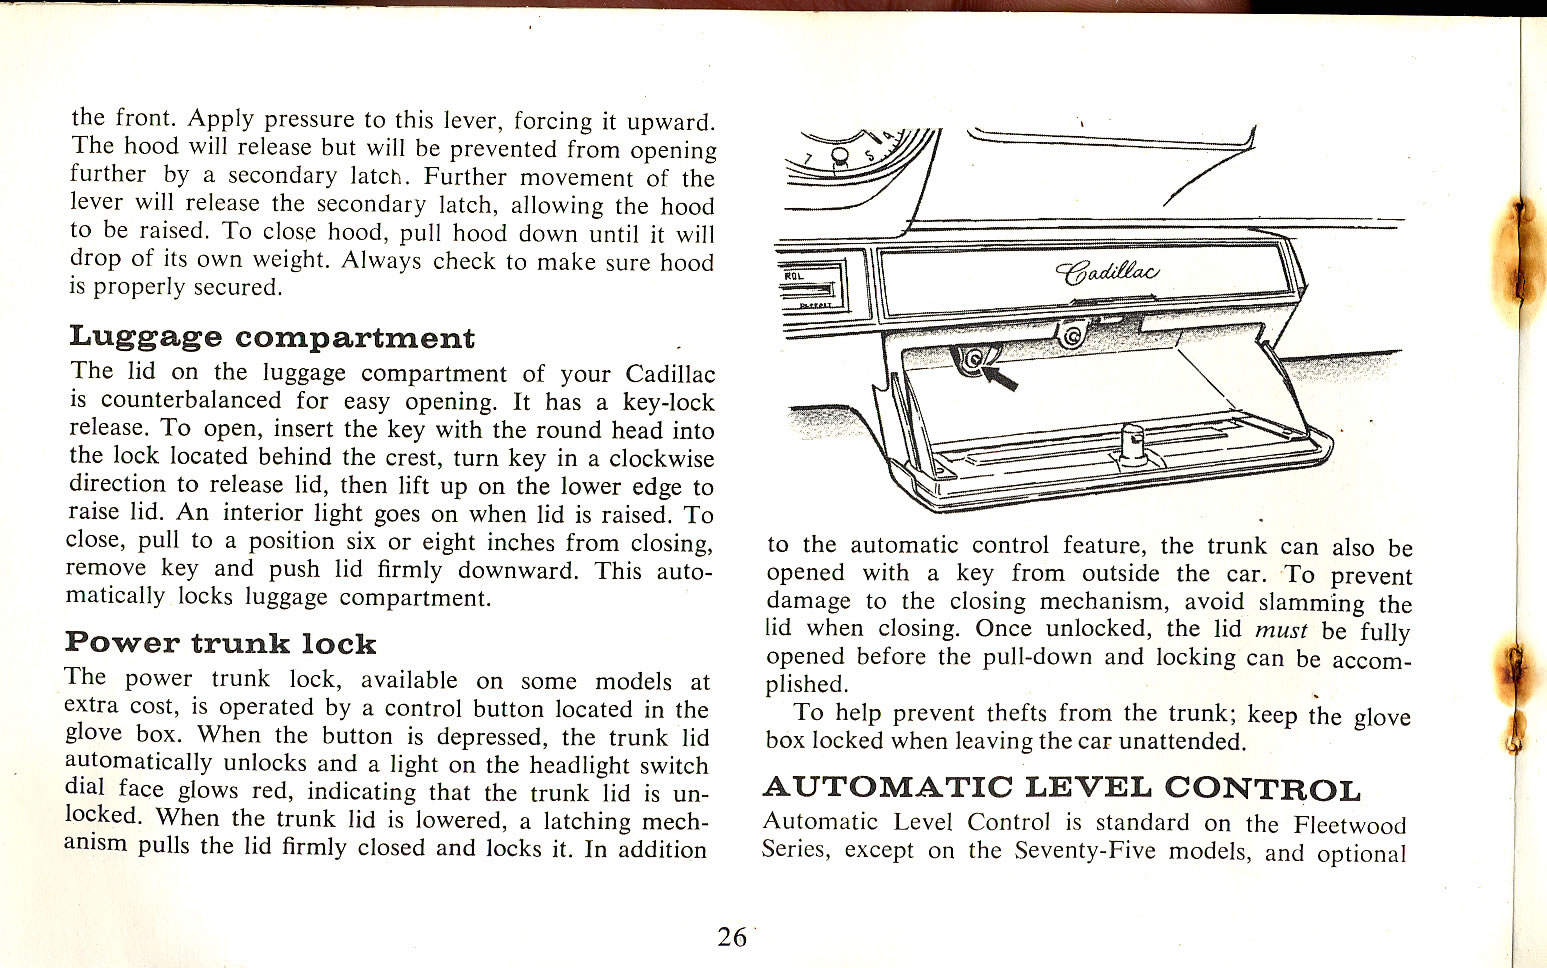 1965_Cadillac_Manual-26